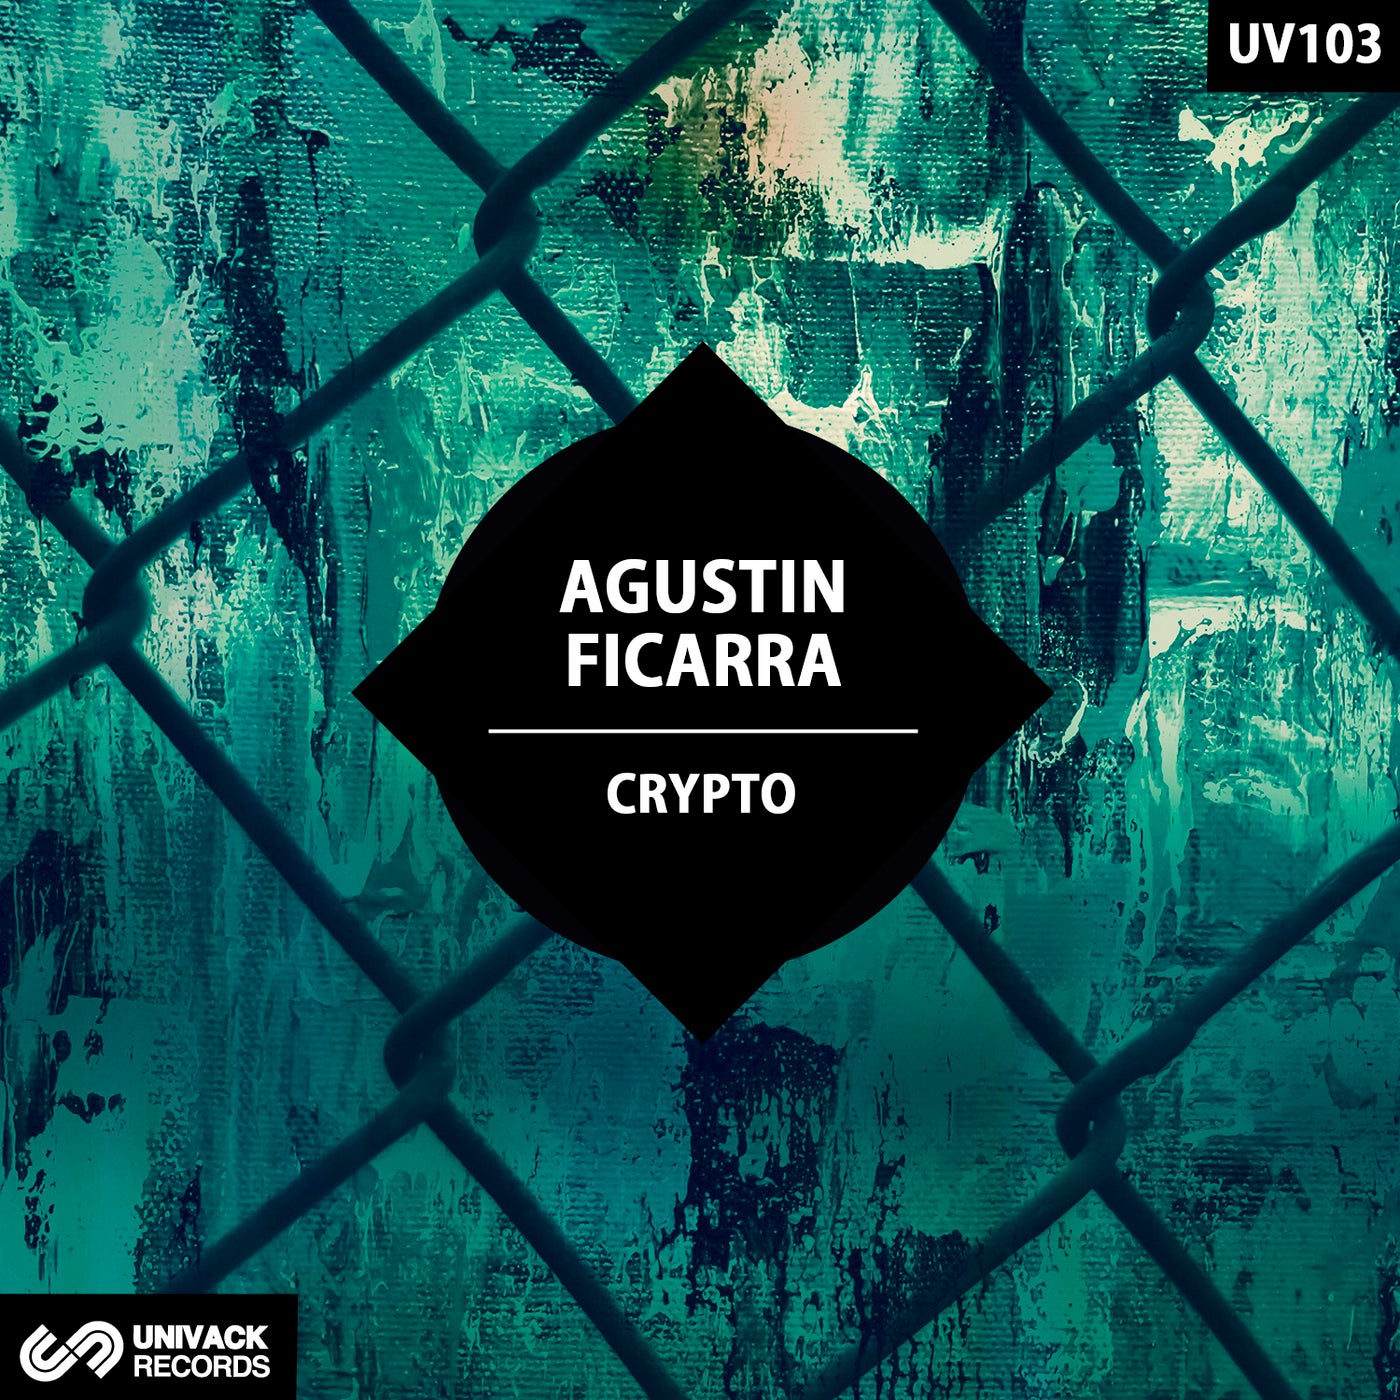 Agustin Ficarra - Crypto [UV103]